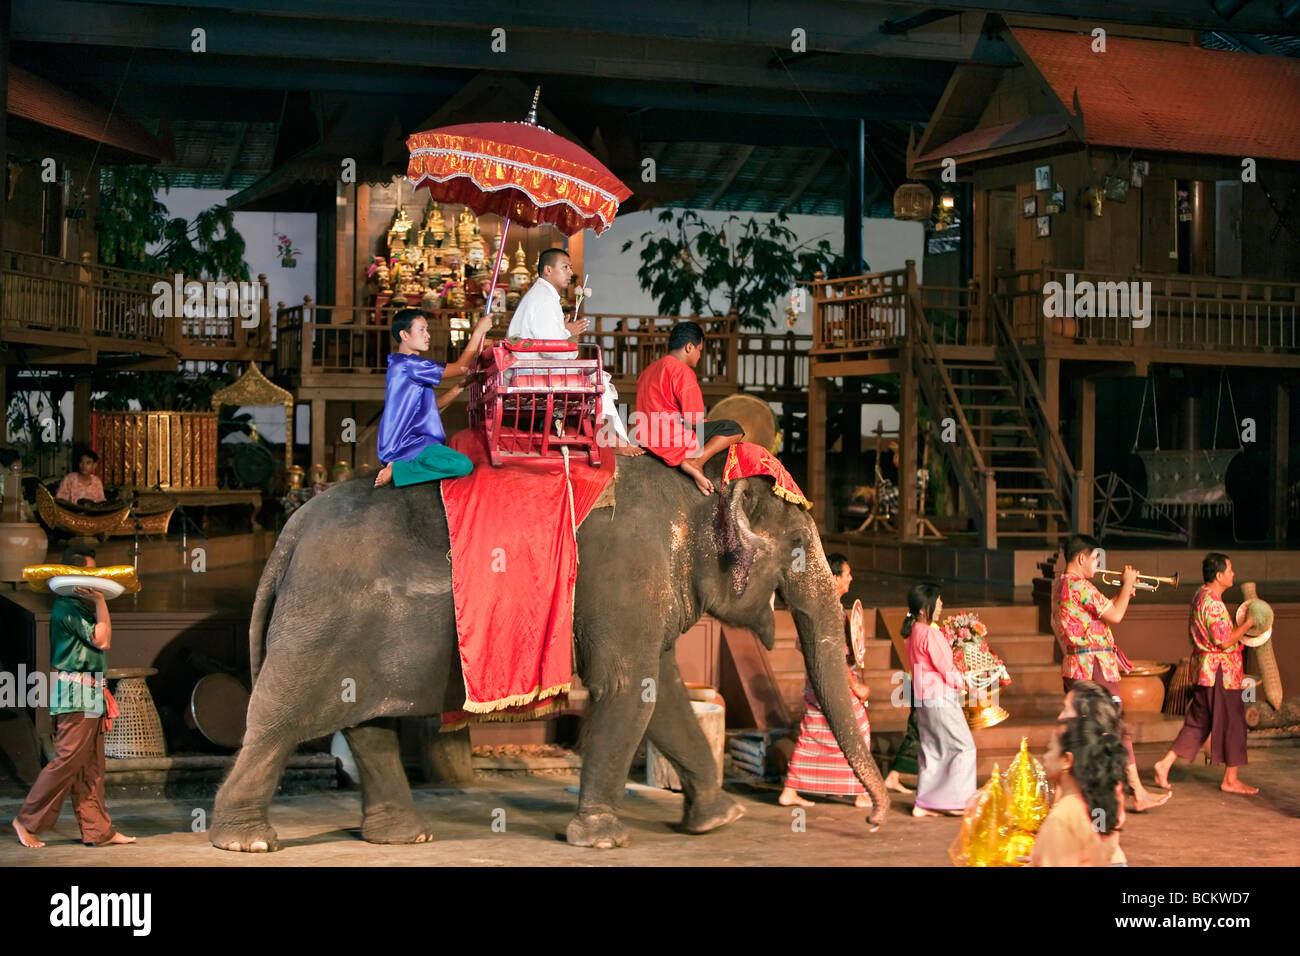 La Thaïlande. Un mariage traditionnel thaïlandais représenté dans un spectacle culturel à la Roseraie un complexe touristique situé dans 75 hectares de jardins Banque D'Images